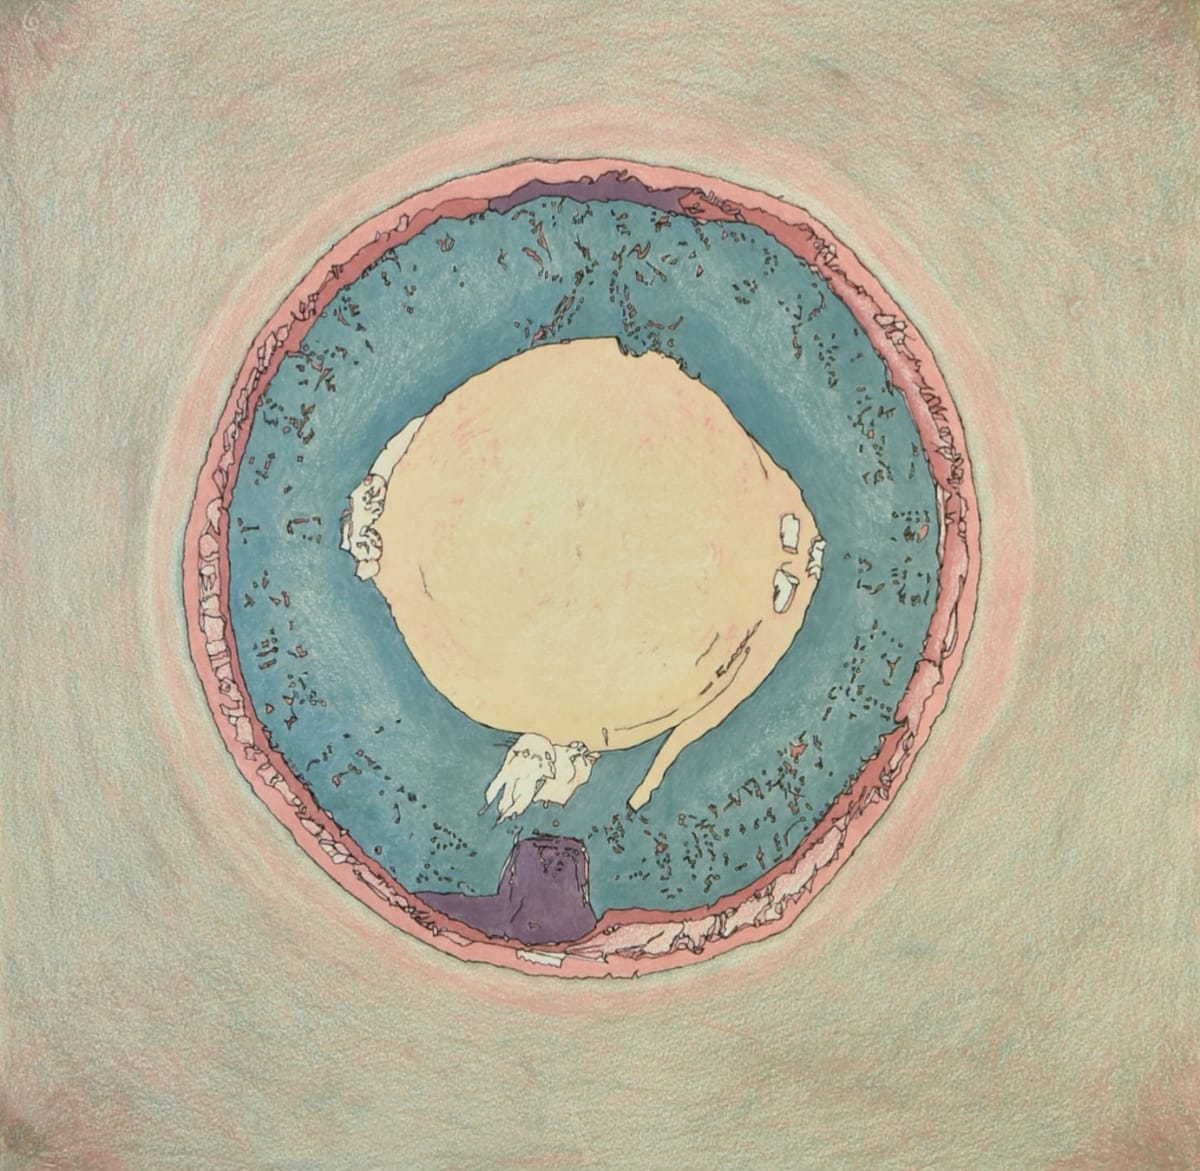 A Flounder Mandala by Pat Borow 